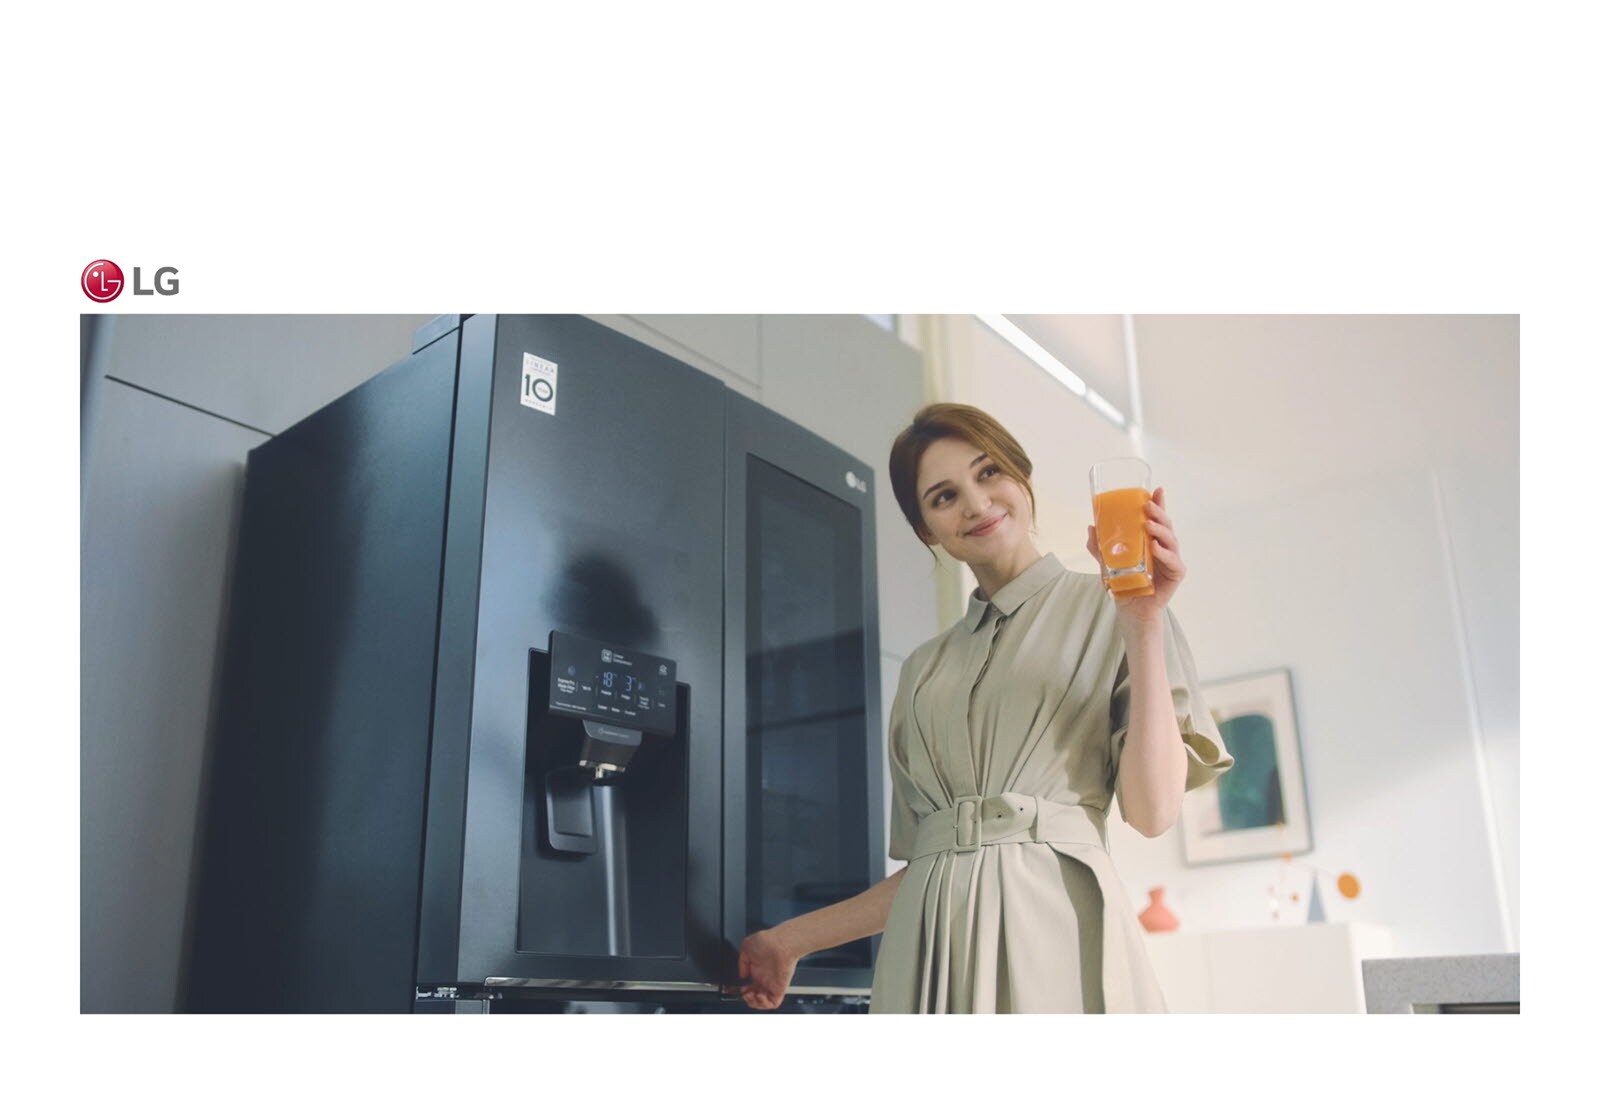 صورة يظهر بها امرأة تقف أمام الثلاجة تحمل كأسًا من العصير وتبتسم أثناء غلق الباب.